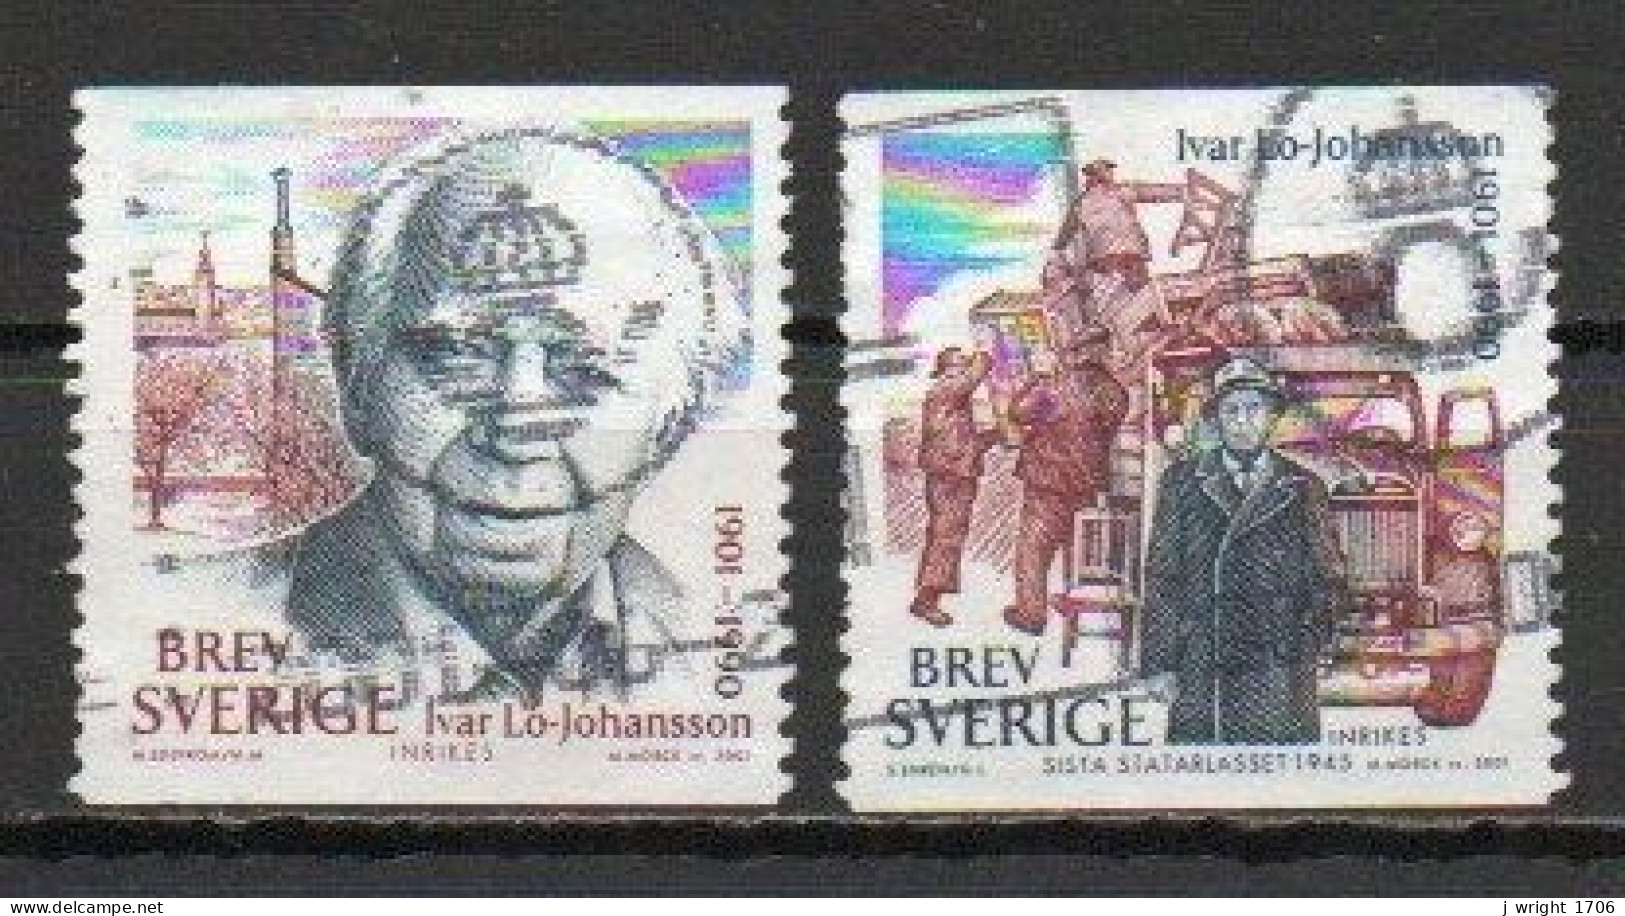 Sweden, 2001, Ivar Lo-Johansson, Set, USED - Used Stamps